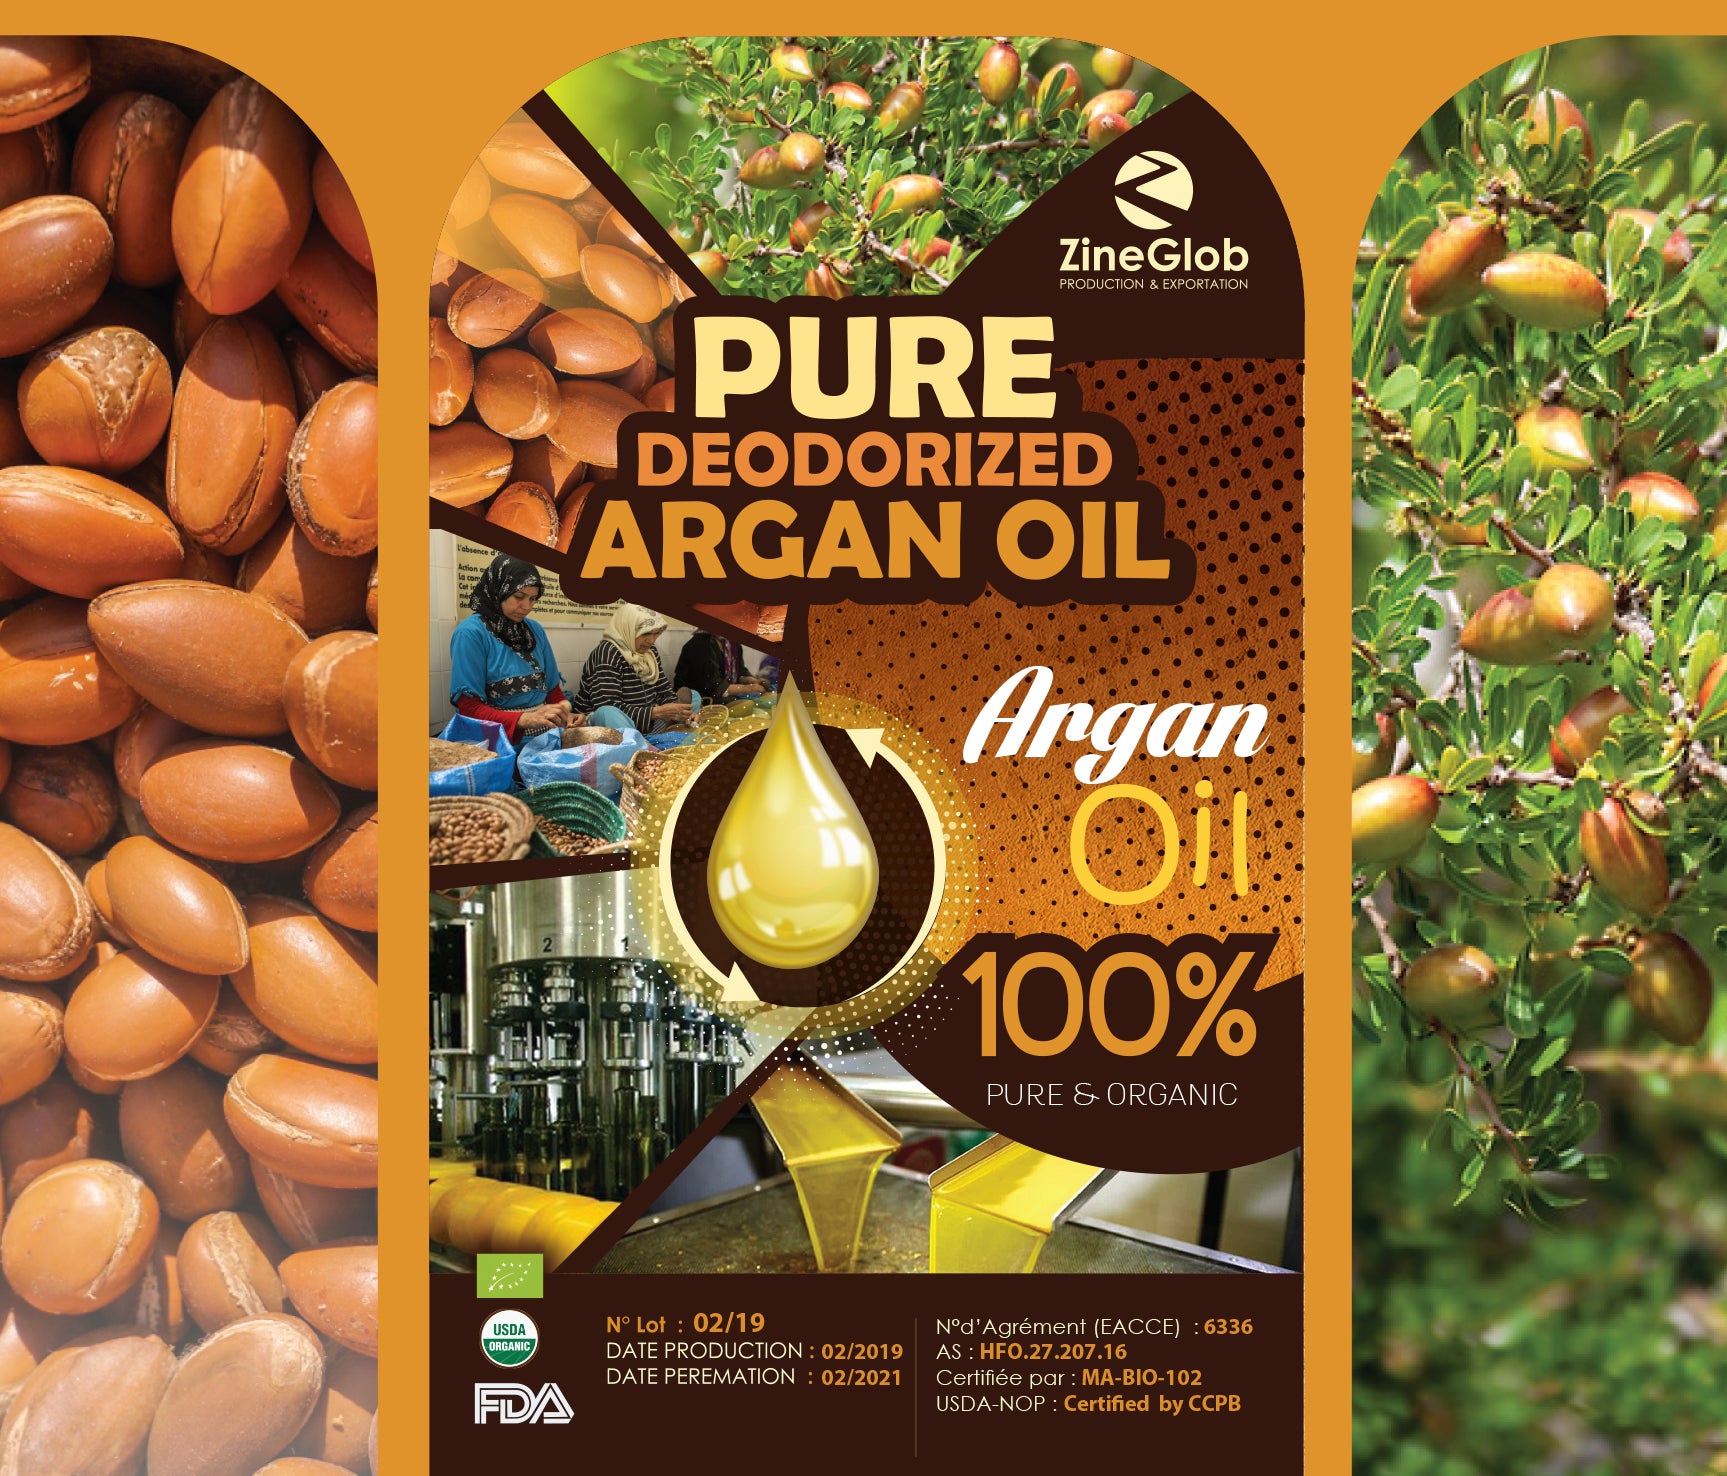 Unroasted Argan oil